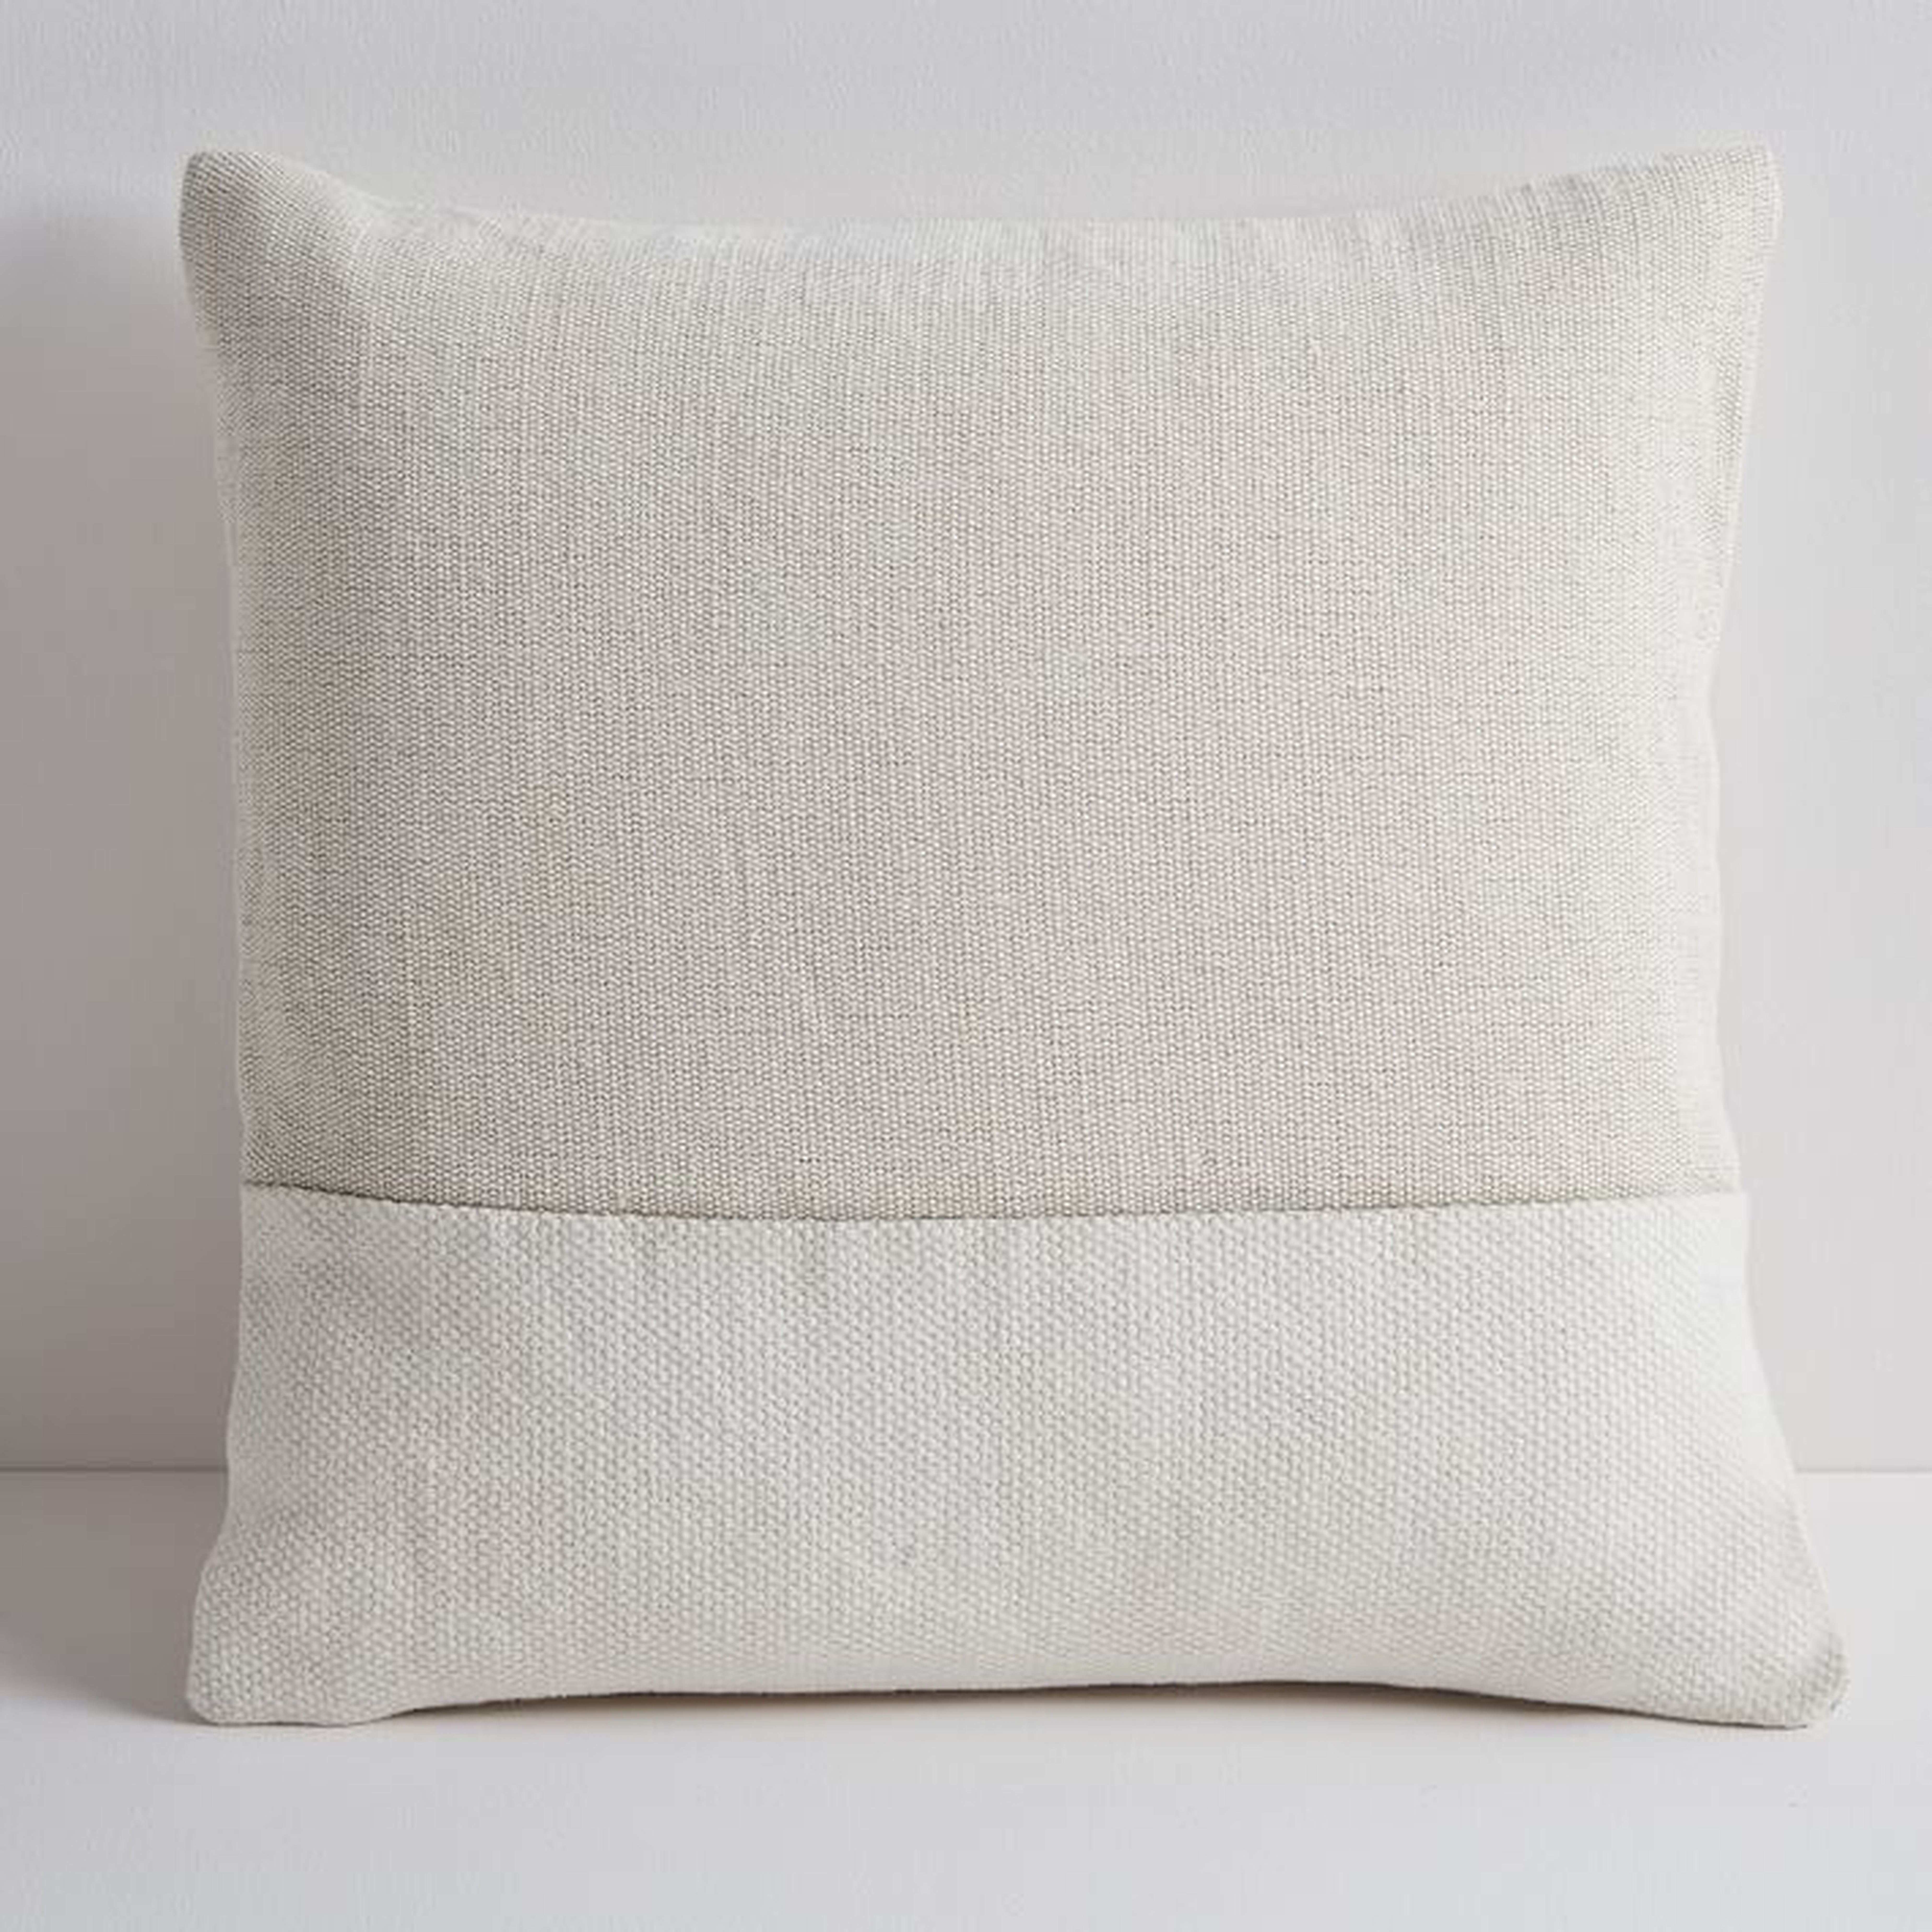 Cotton Canvas Pillow Cover, Stone White, 18"x18" - West Elm